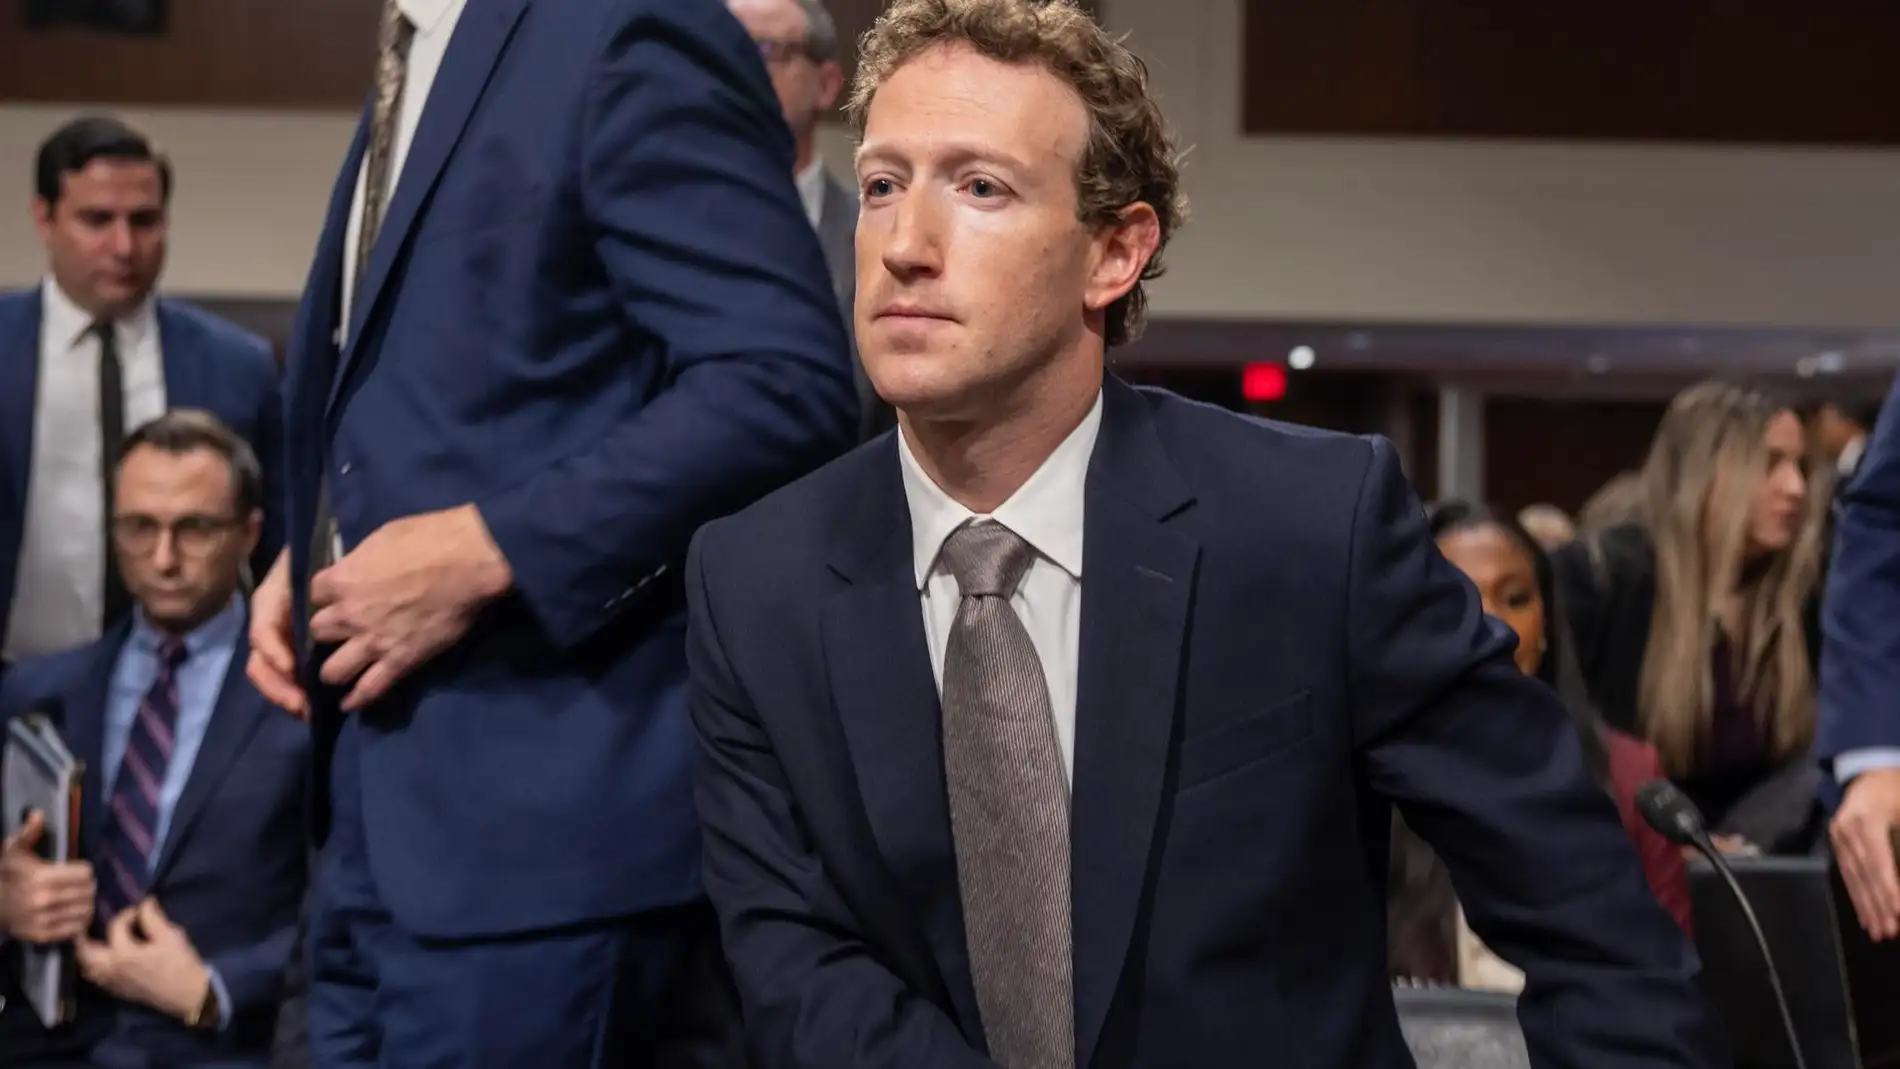 Zuckerberg pide perdón a los padres de víctimas de abuso infantil a través de las redes sociales